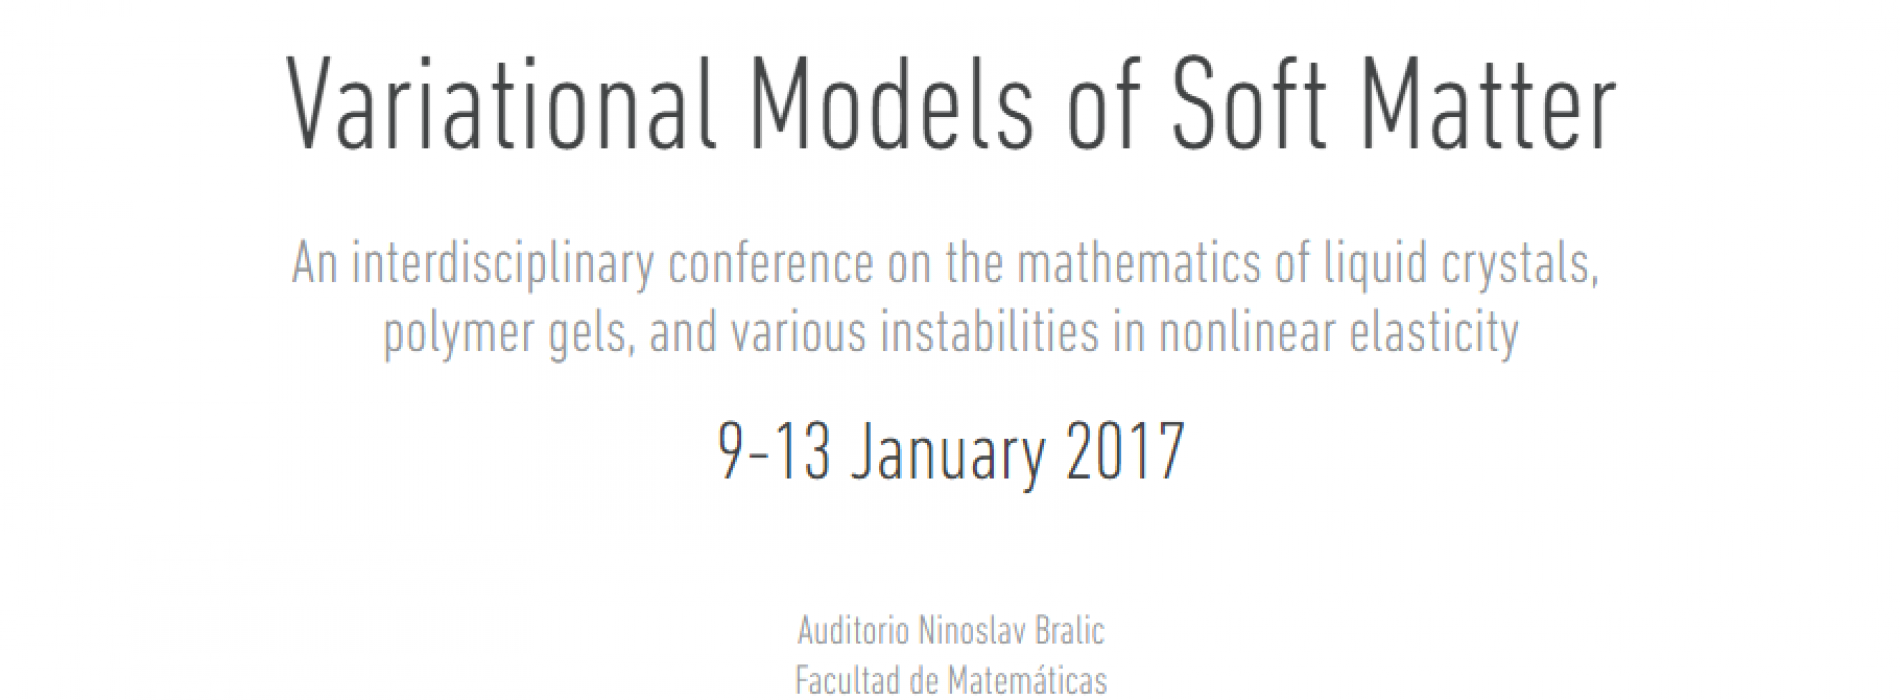 Variational Models of Soft Matter